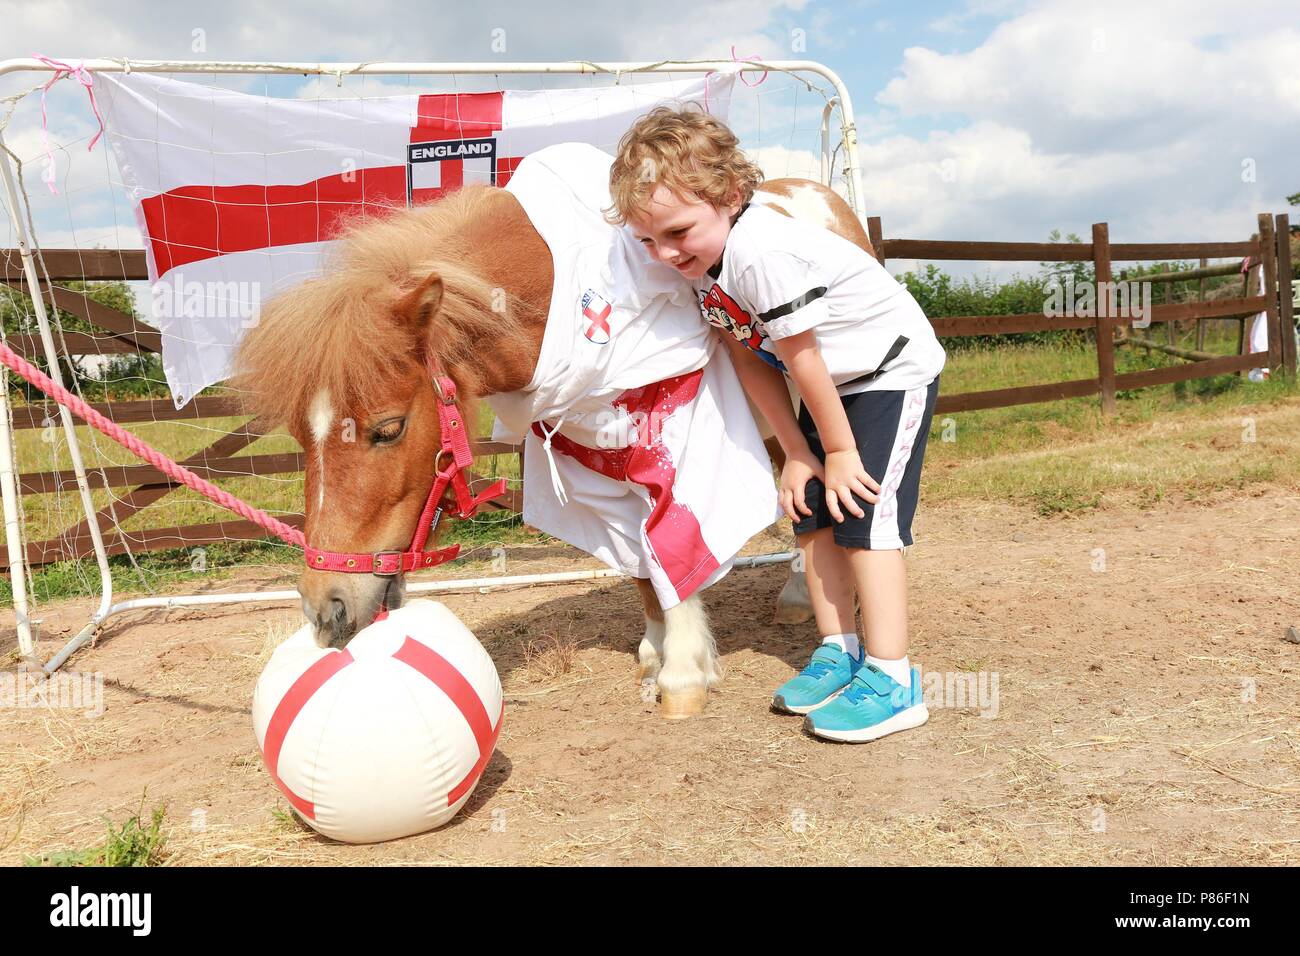 5 Jahre alten Jungen und seine Shetland pony in England Fußball-Kit gekleidet, Großbritannien Stockfoto